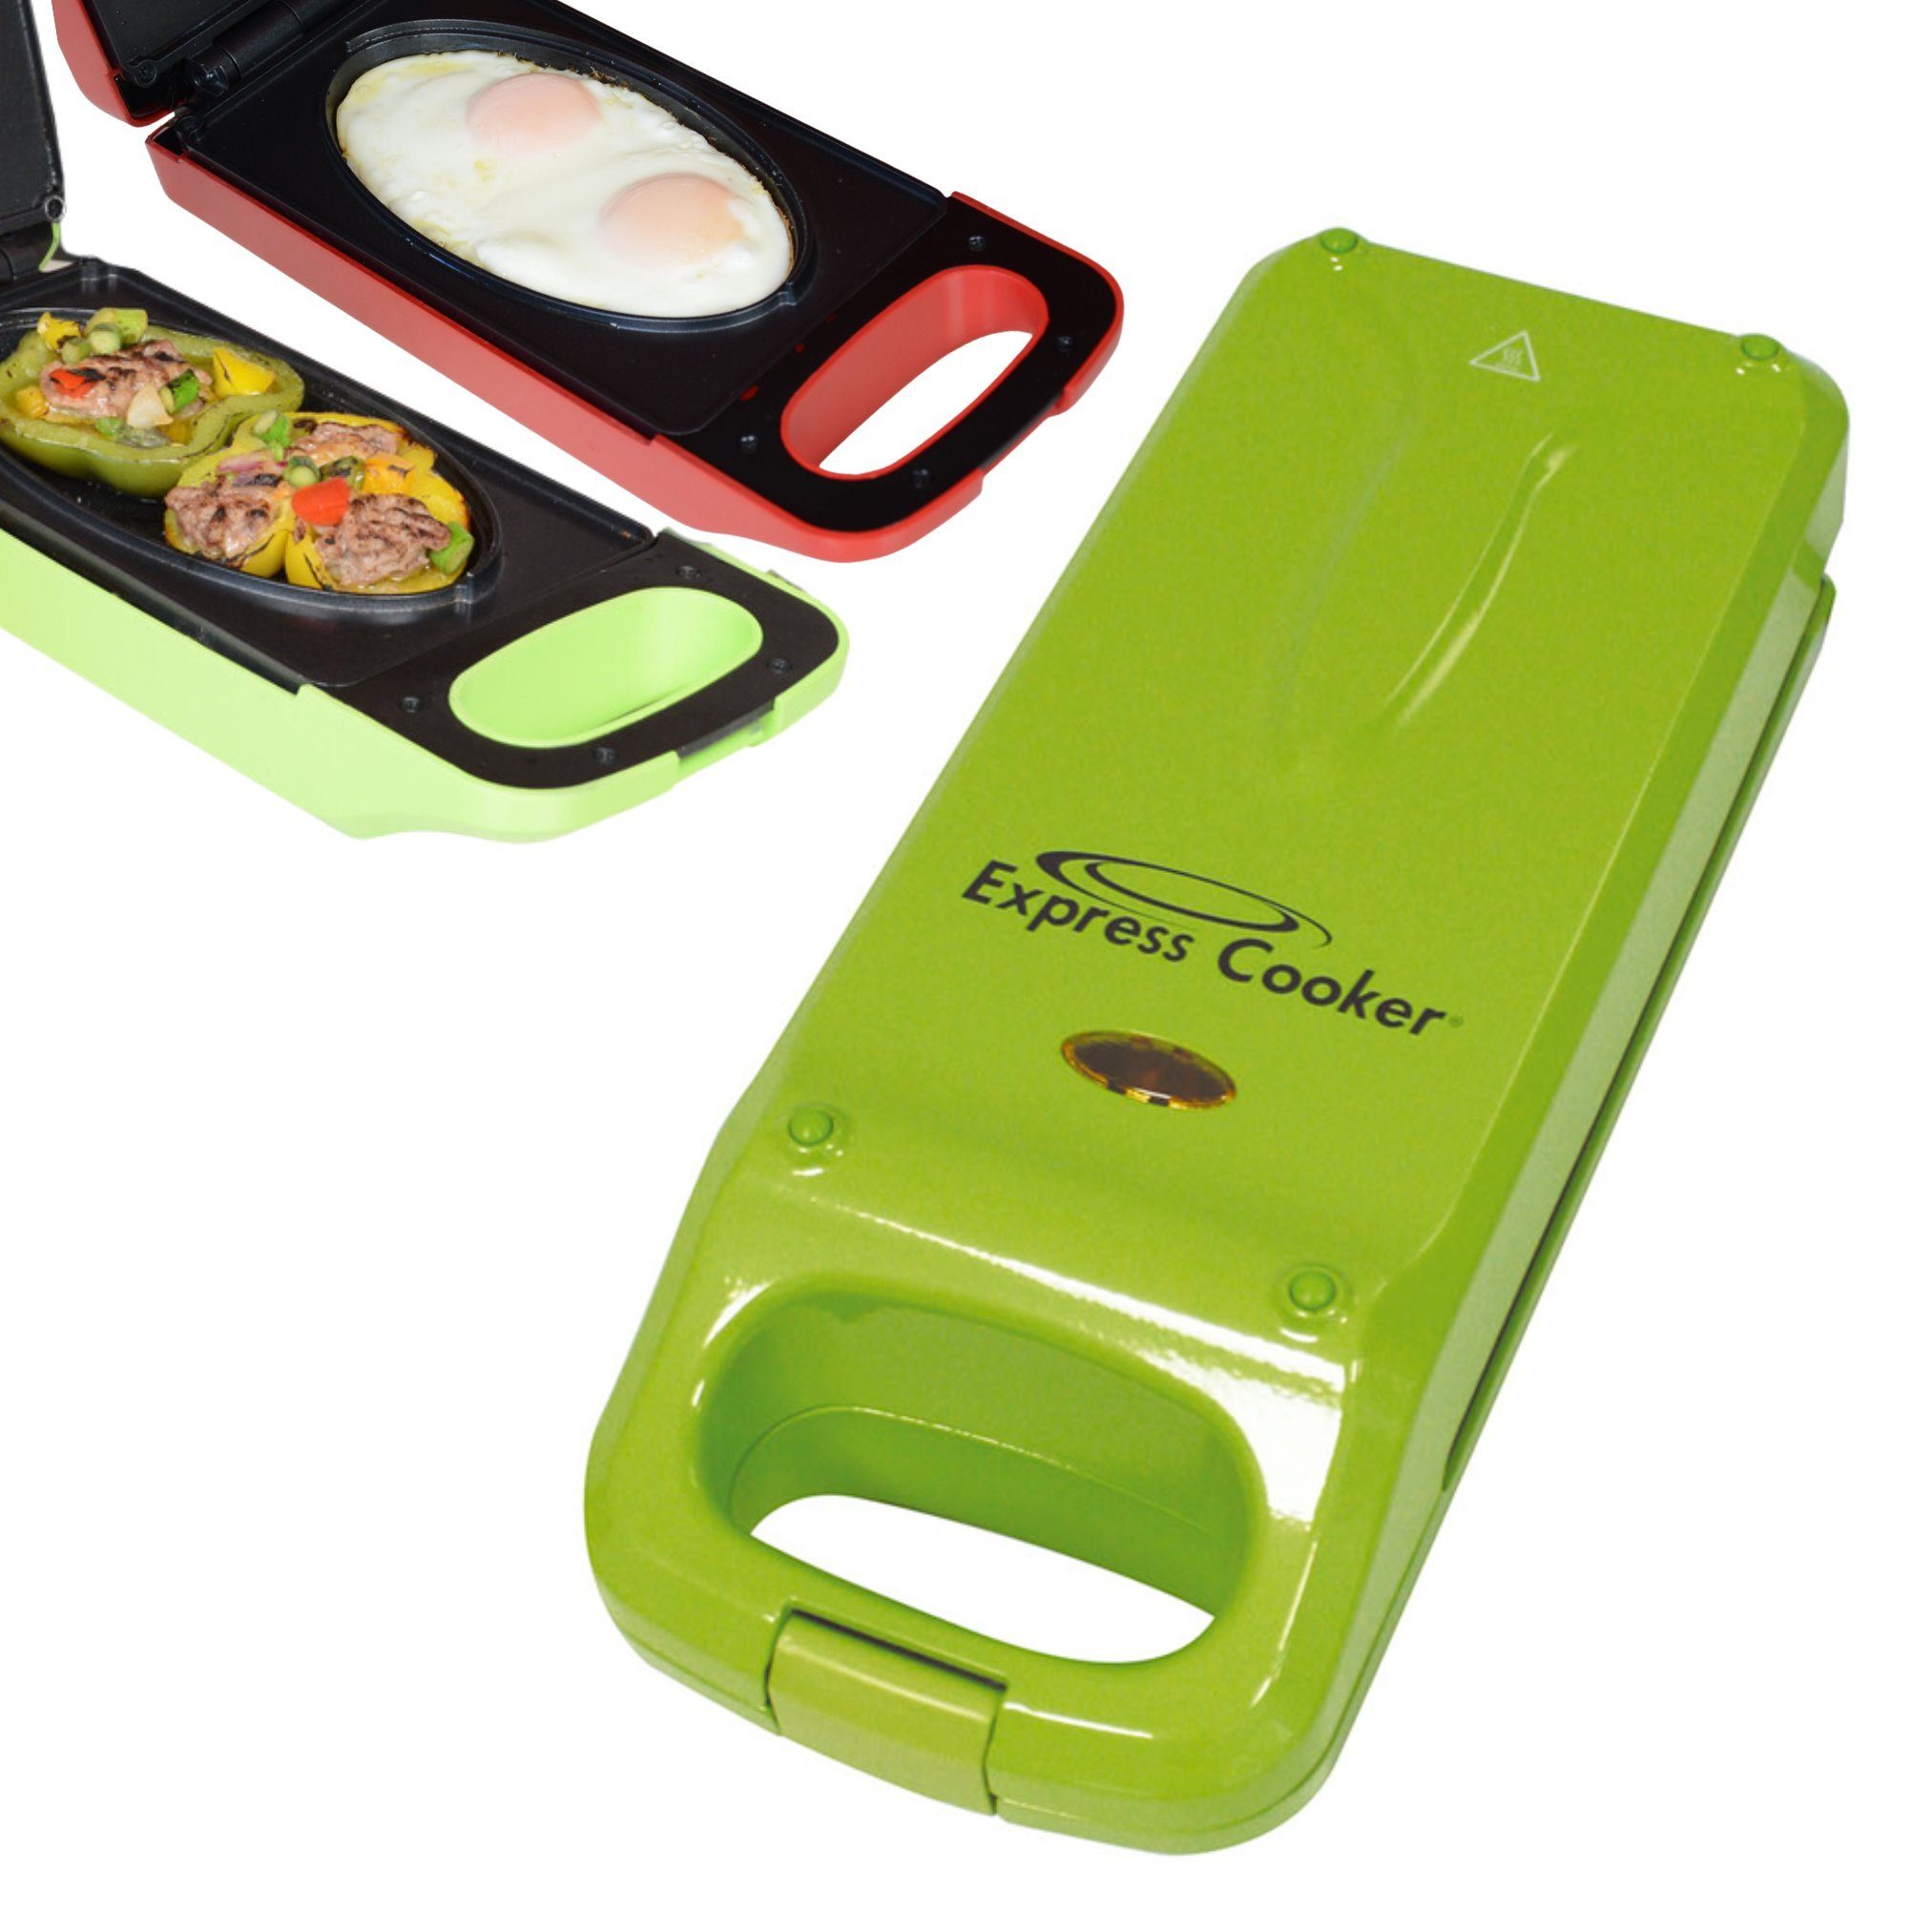 Best Direct® Kontaktgrill Express Cooker®, 800 W, Antihaft-Oberfläche, Ober-Unterhitze, 3in1 - Toasten, Backen, Grillen grün